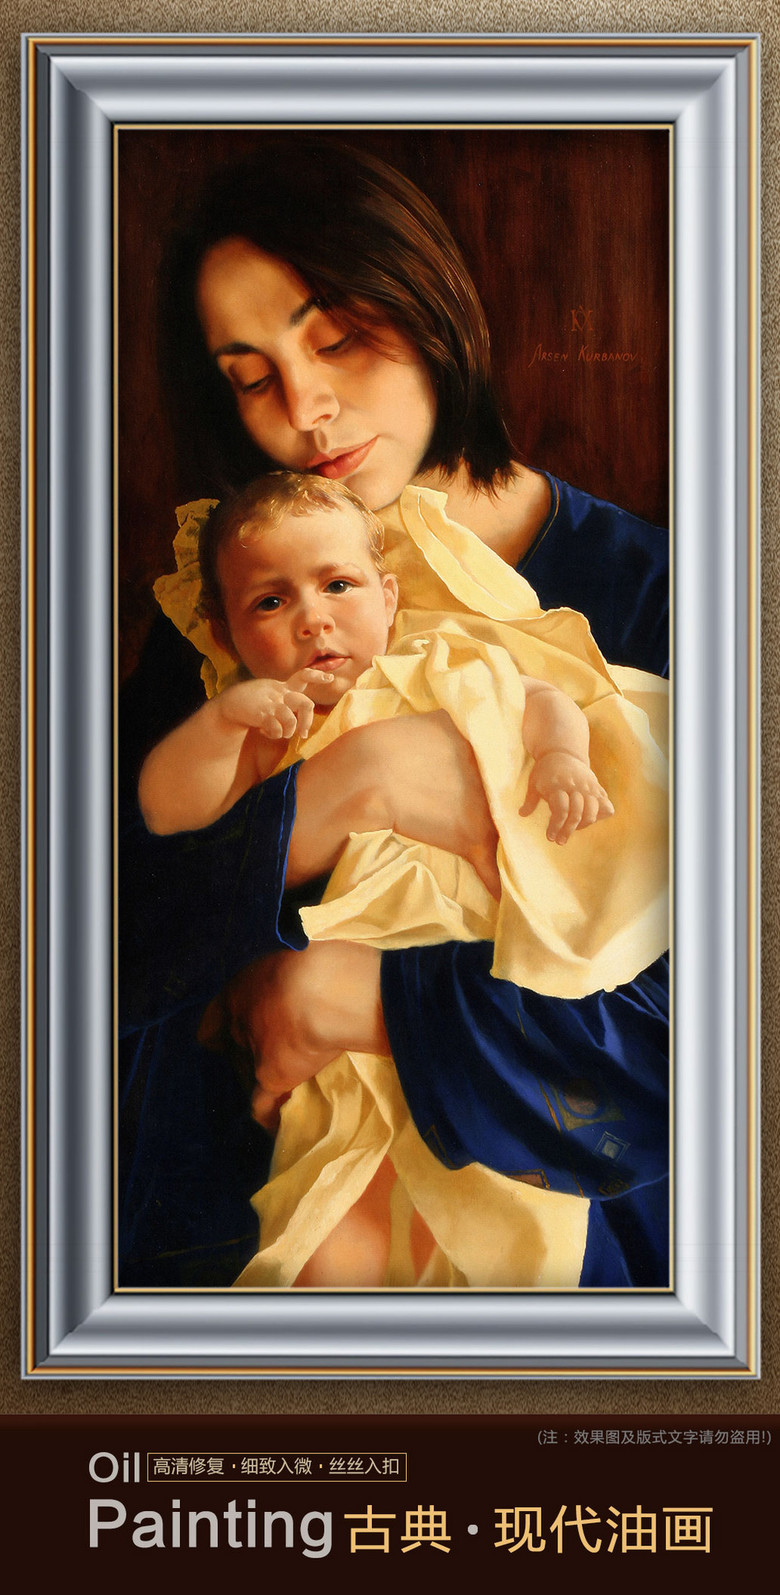 怀抱着婴儿的母亲俄罗斯人物油画